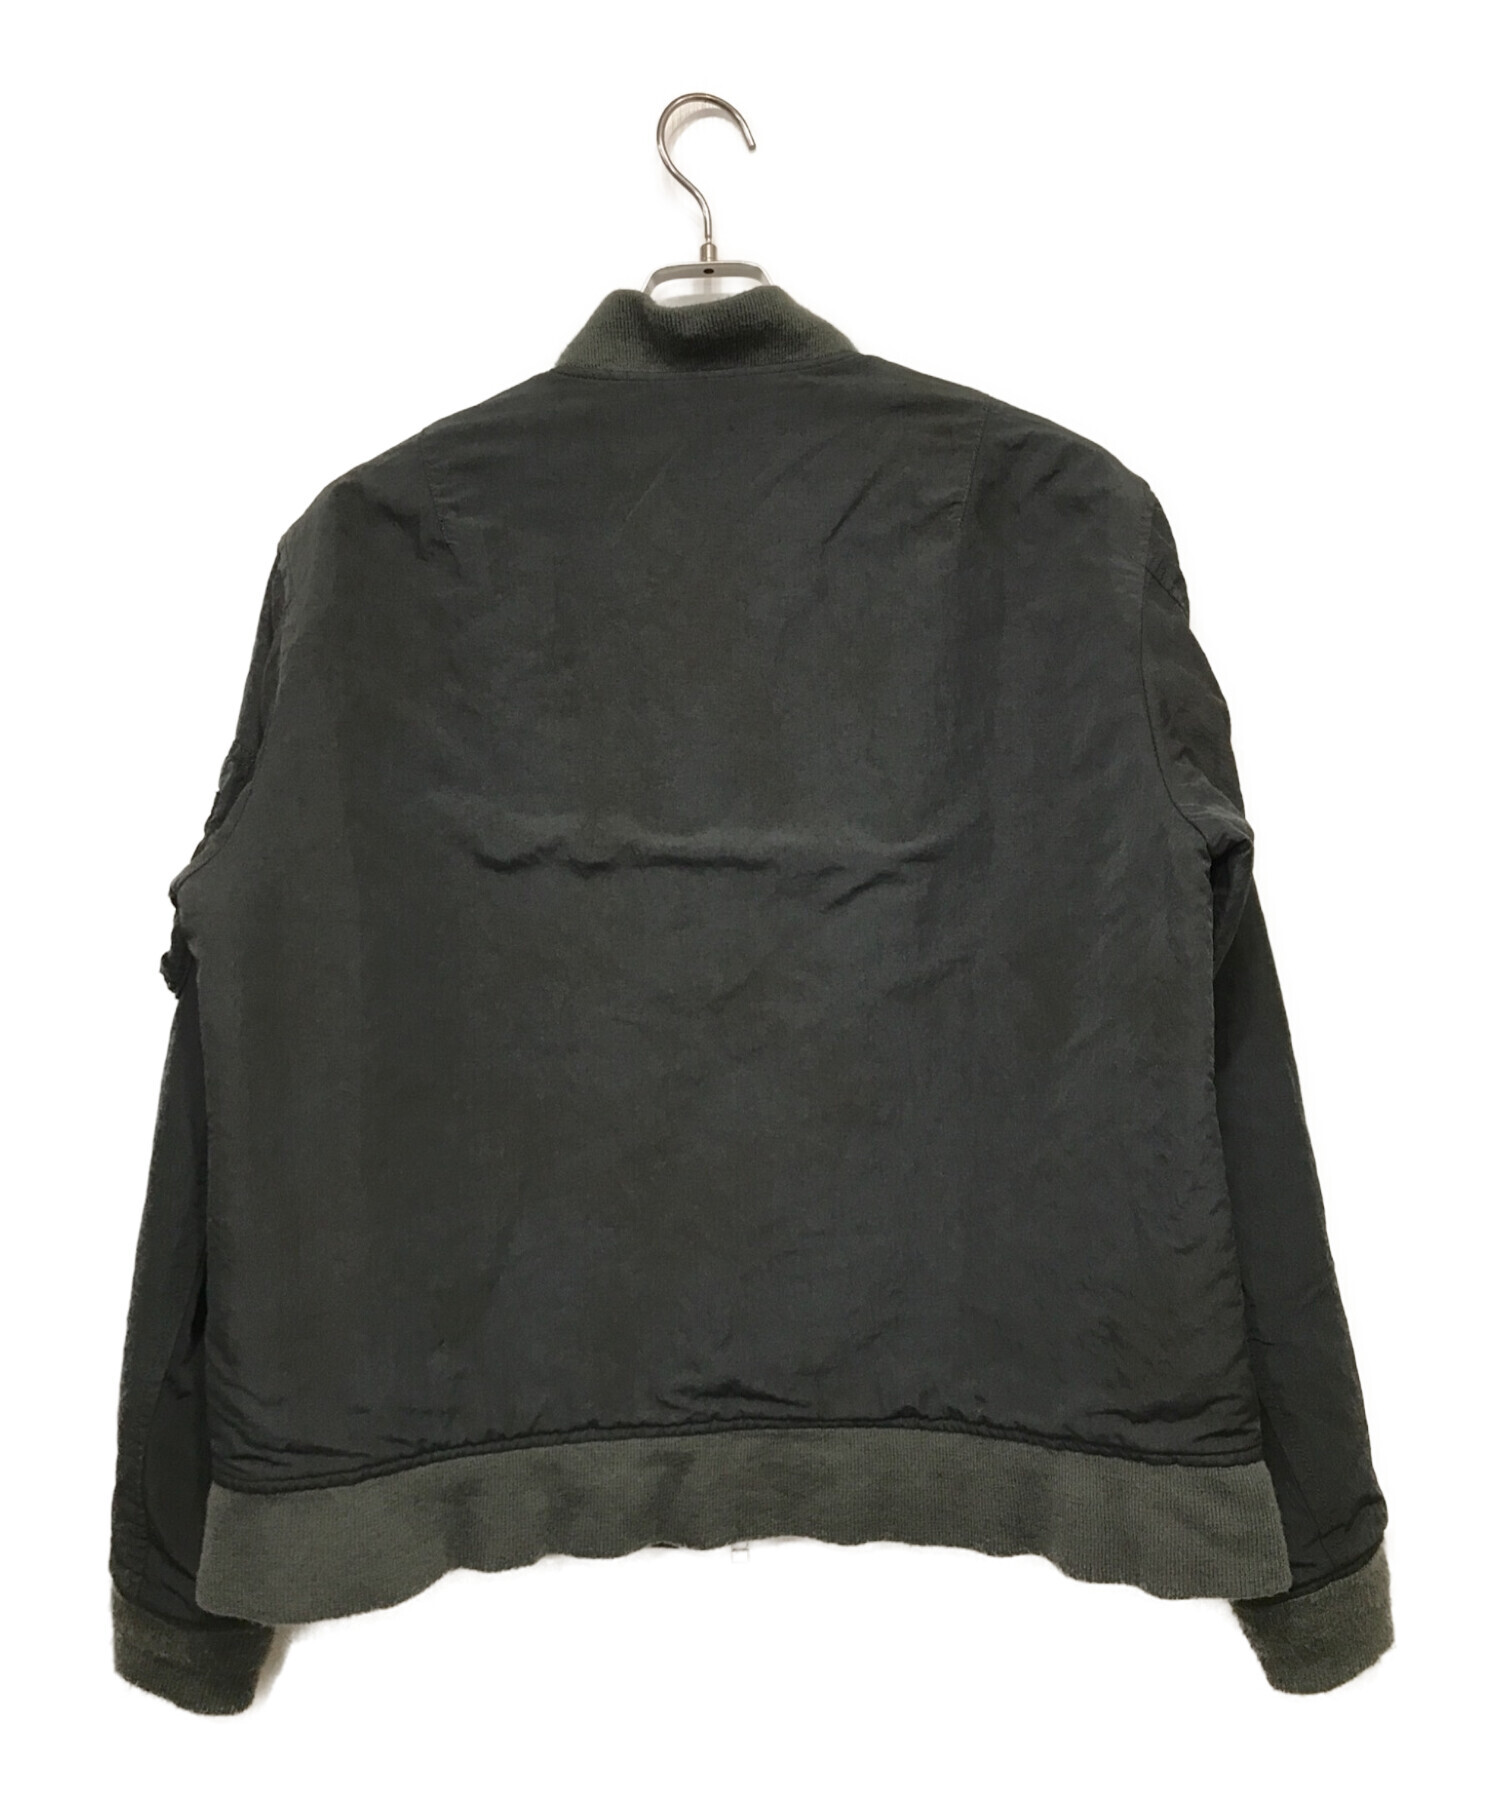 TTT MSW (ティーモダンストリートウェア) MA-1ジャケット ブラック サイズ:SIZE M